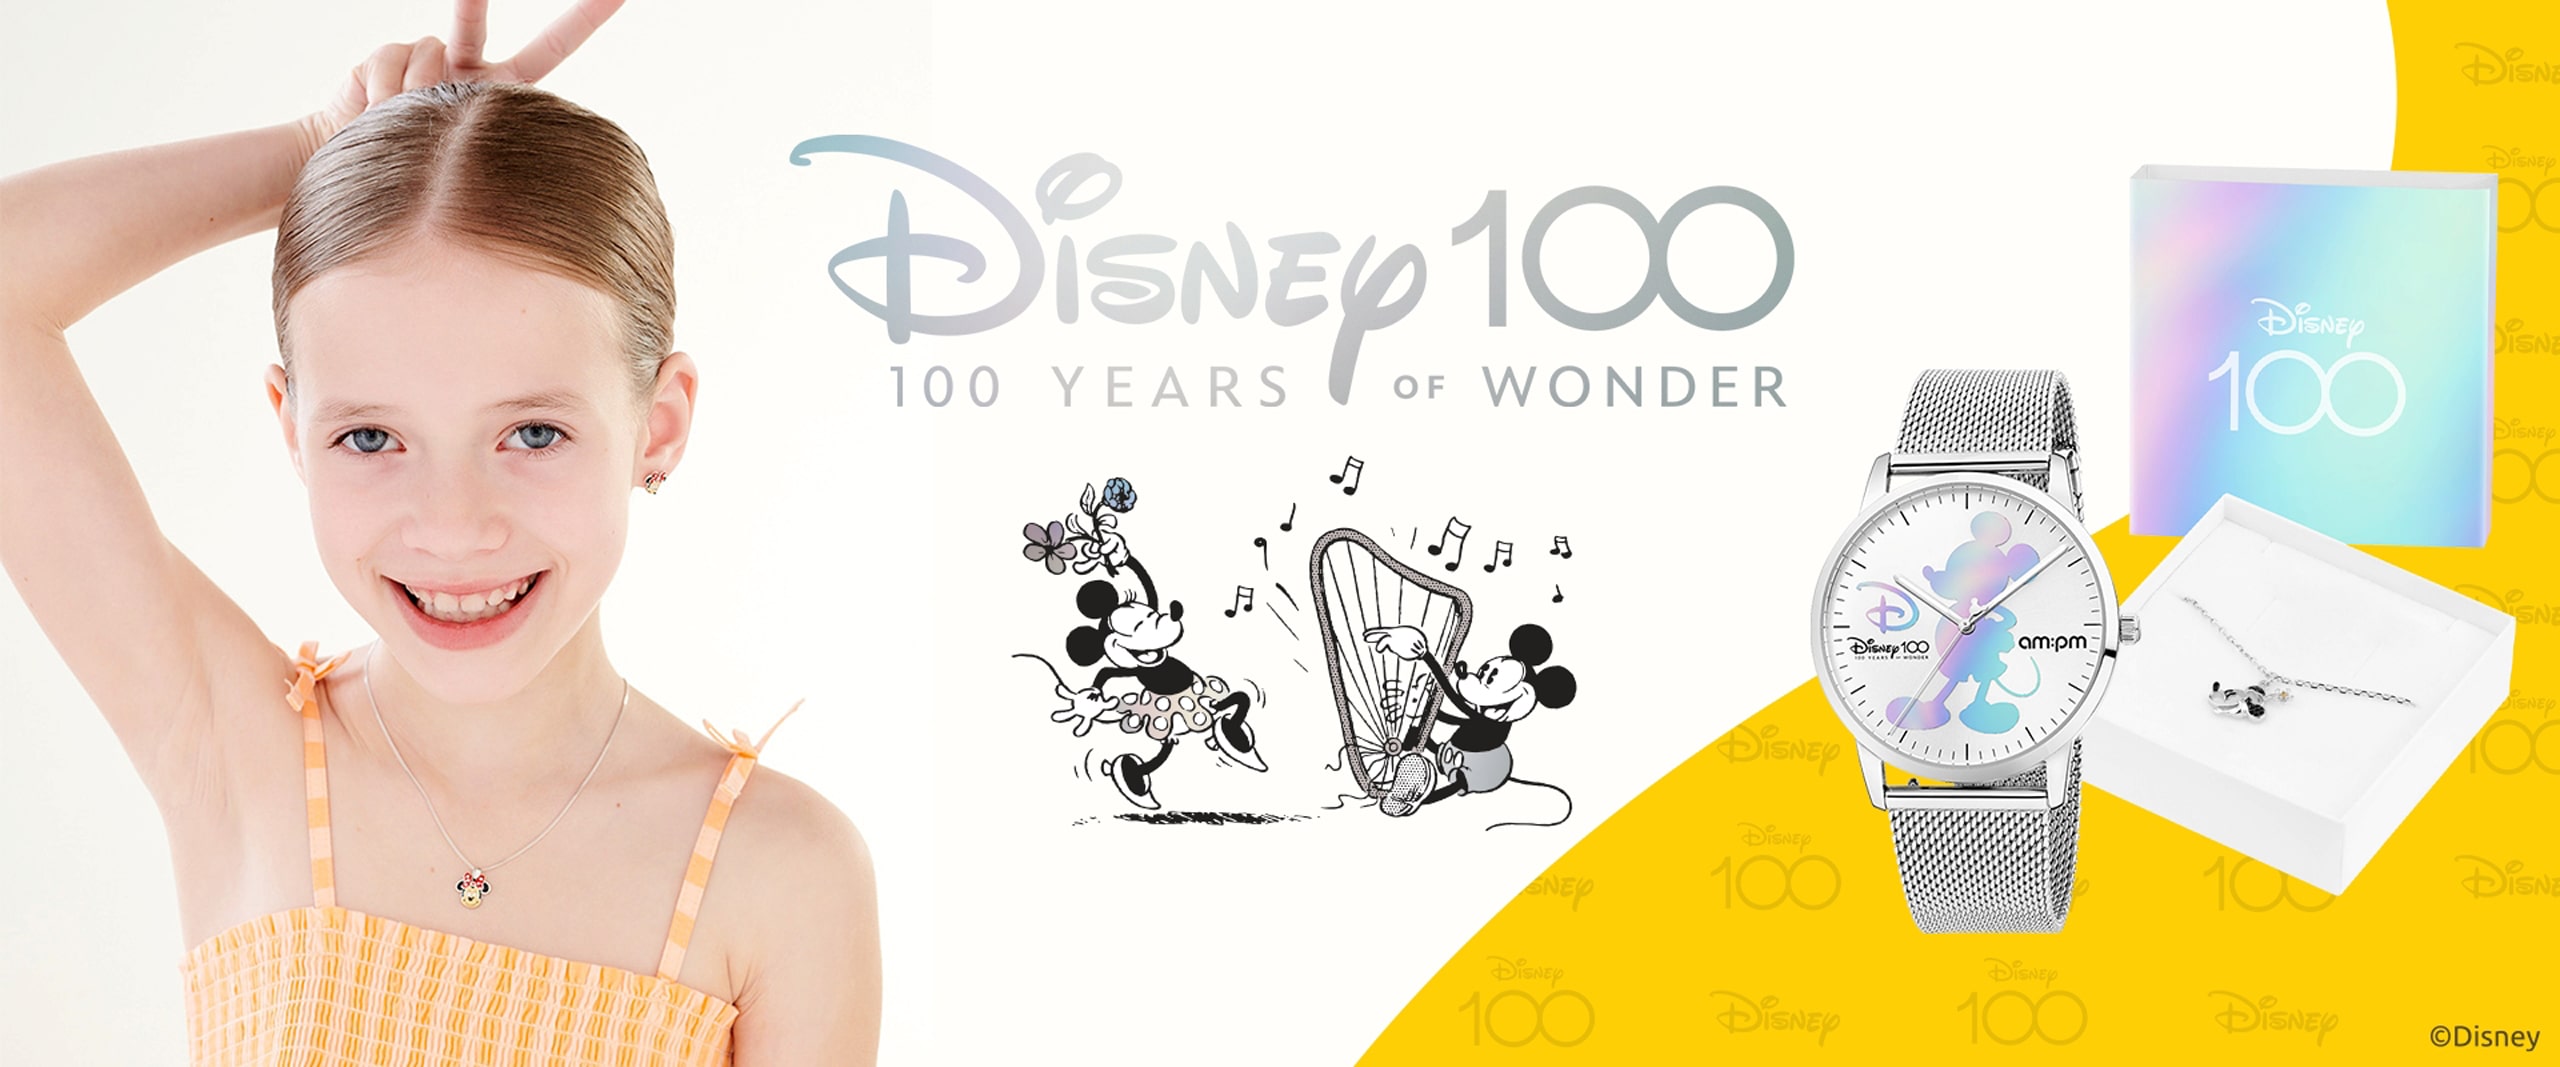 Disney 100 years of Wonder